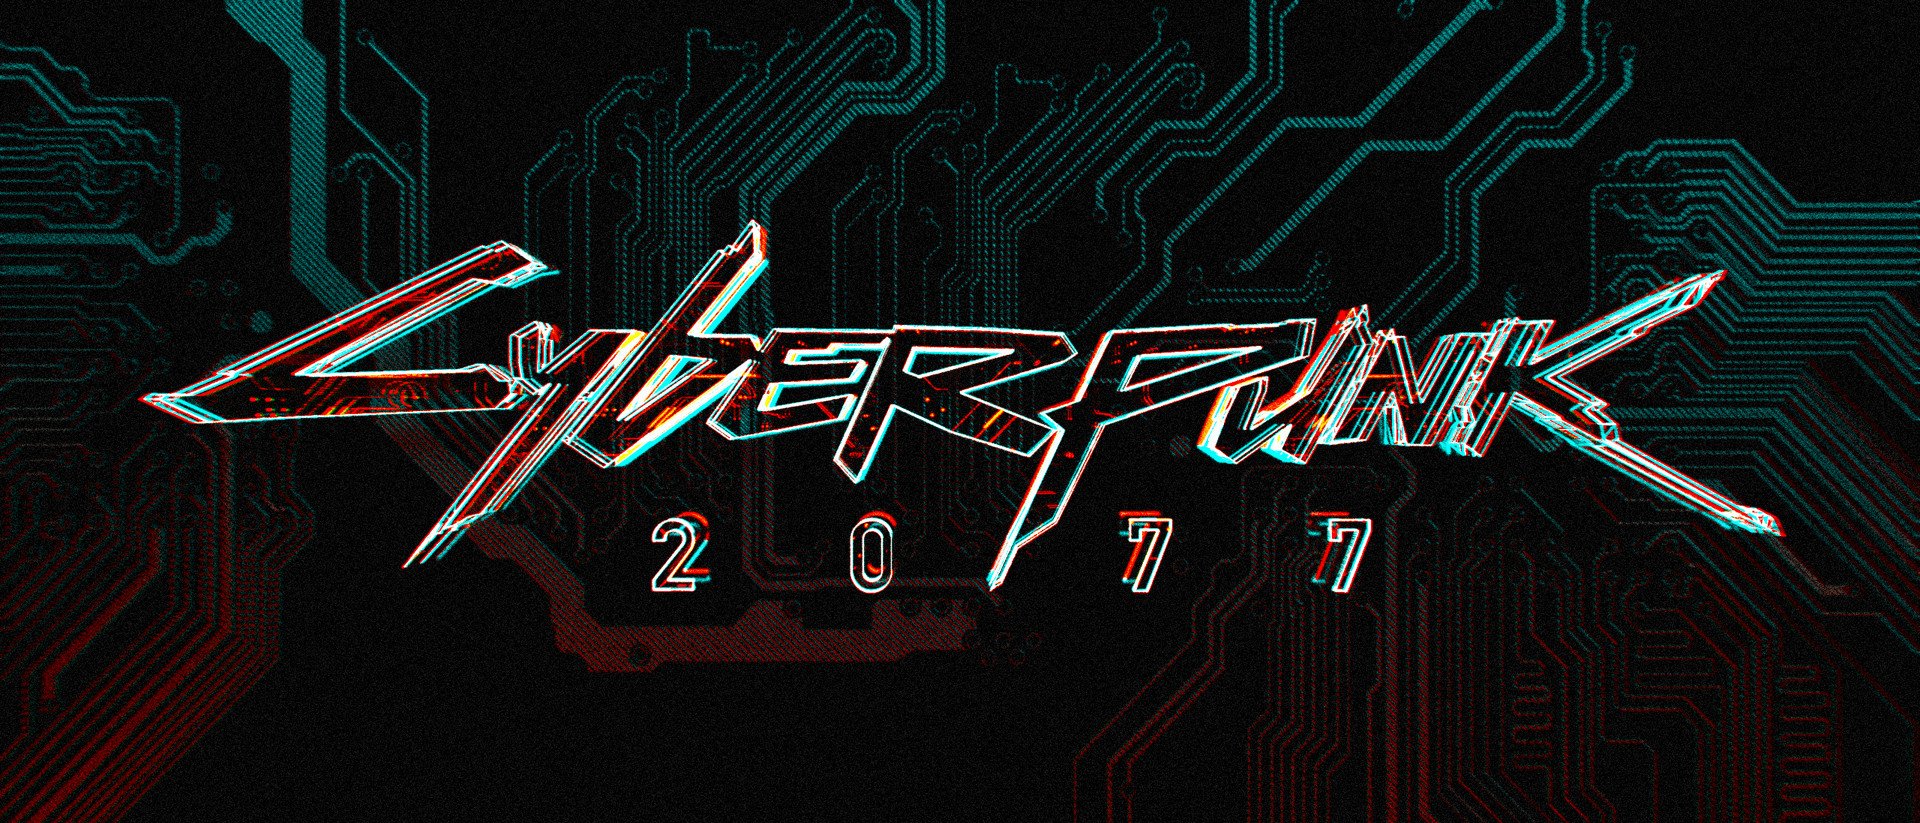 Cyberpunk logo animation фото 65